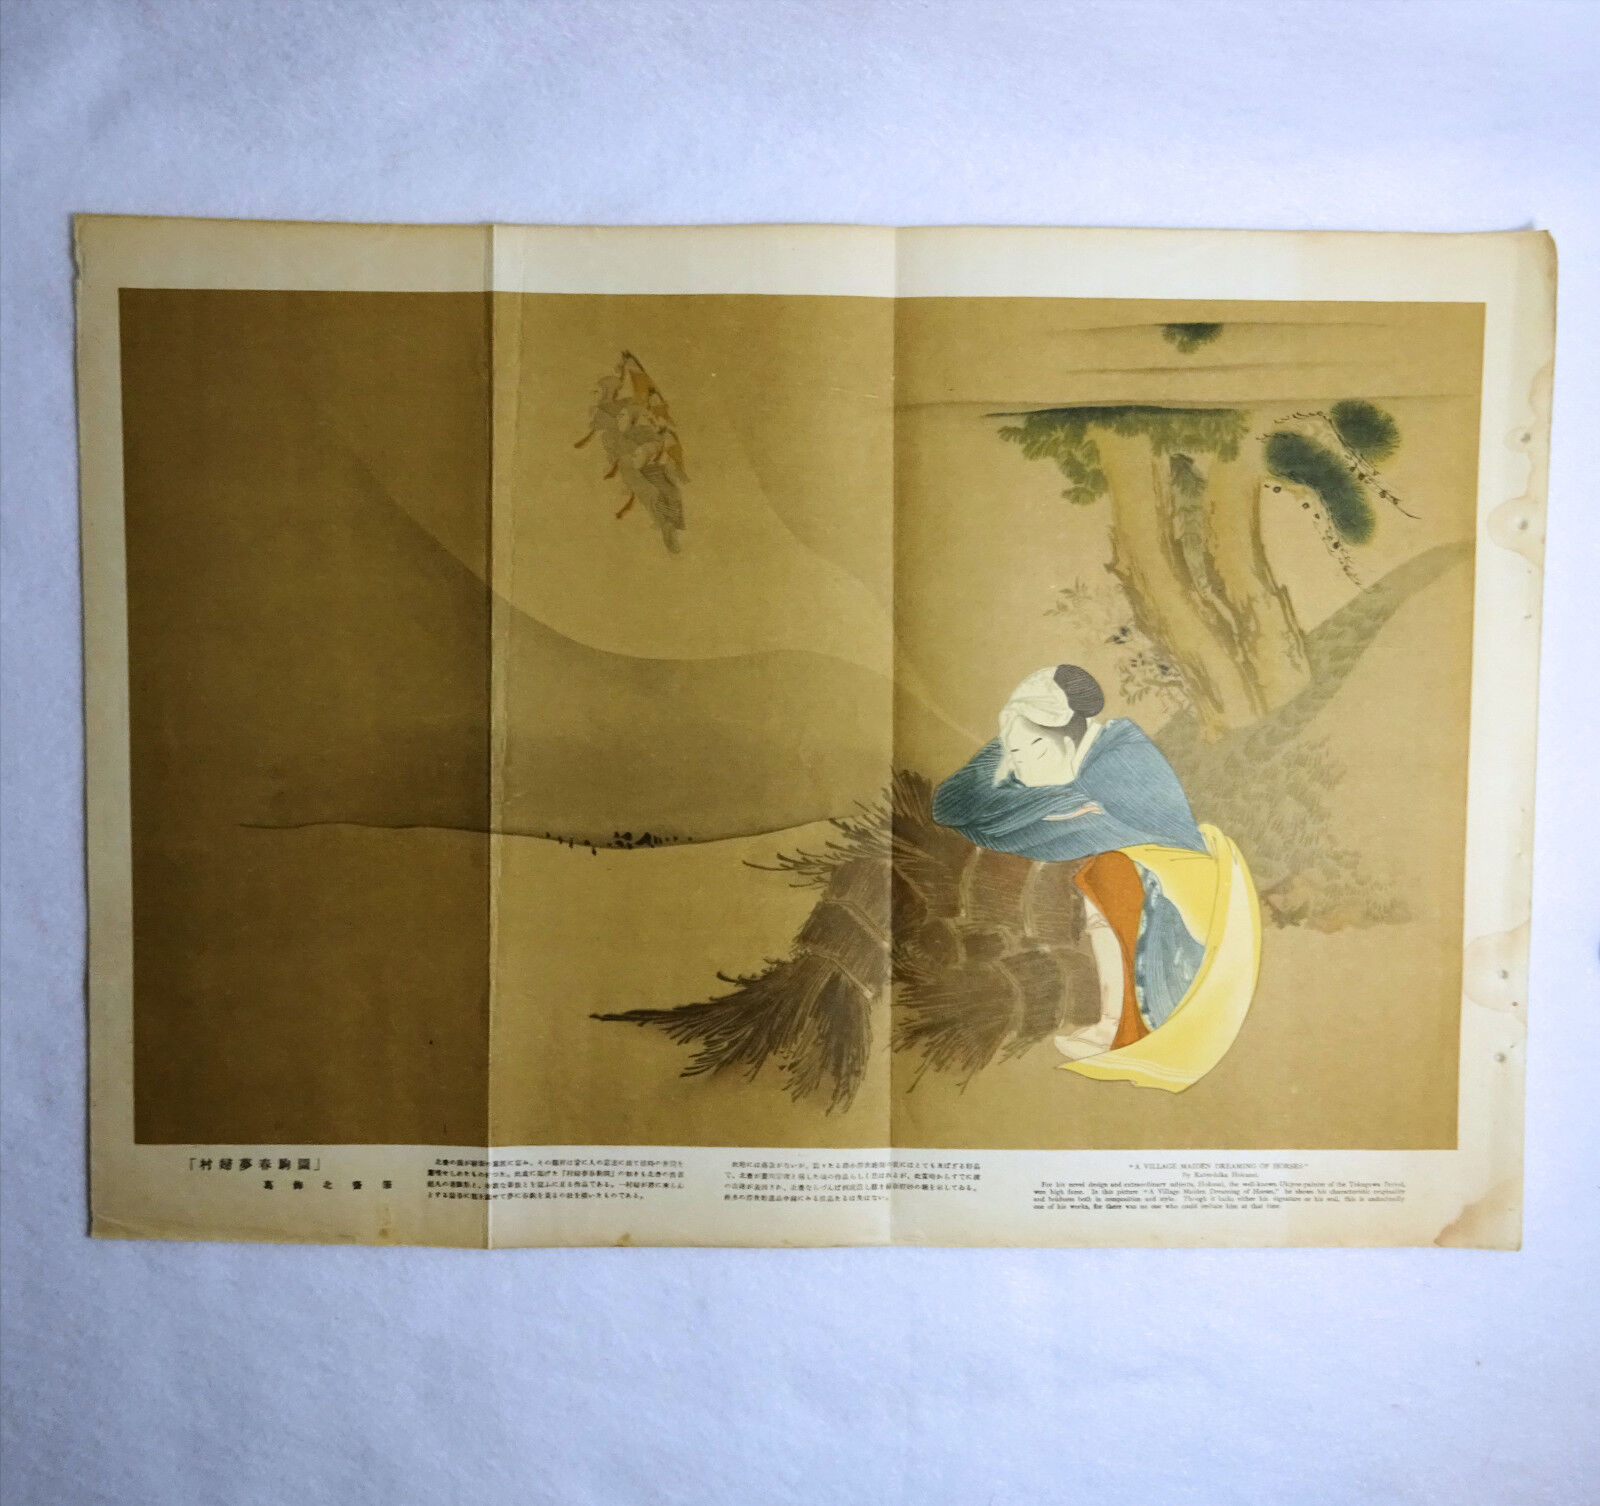 1929 Magazine Print Attributed to Katsushika Hokusai. The International Graphic